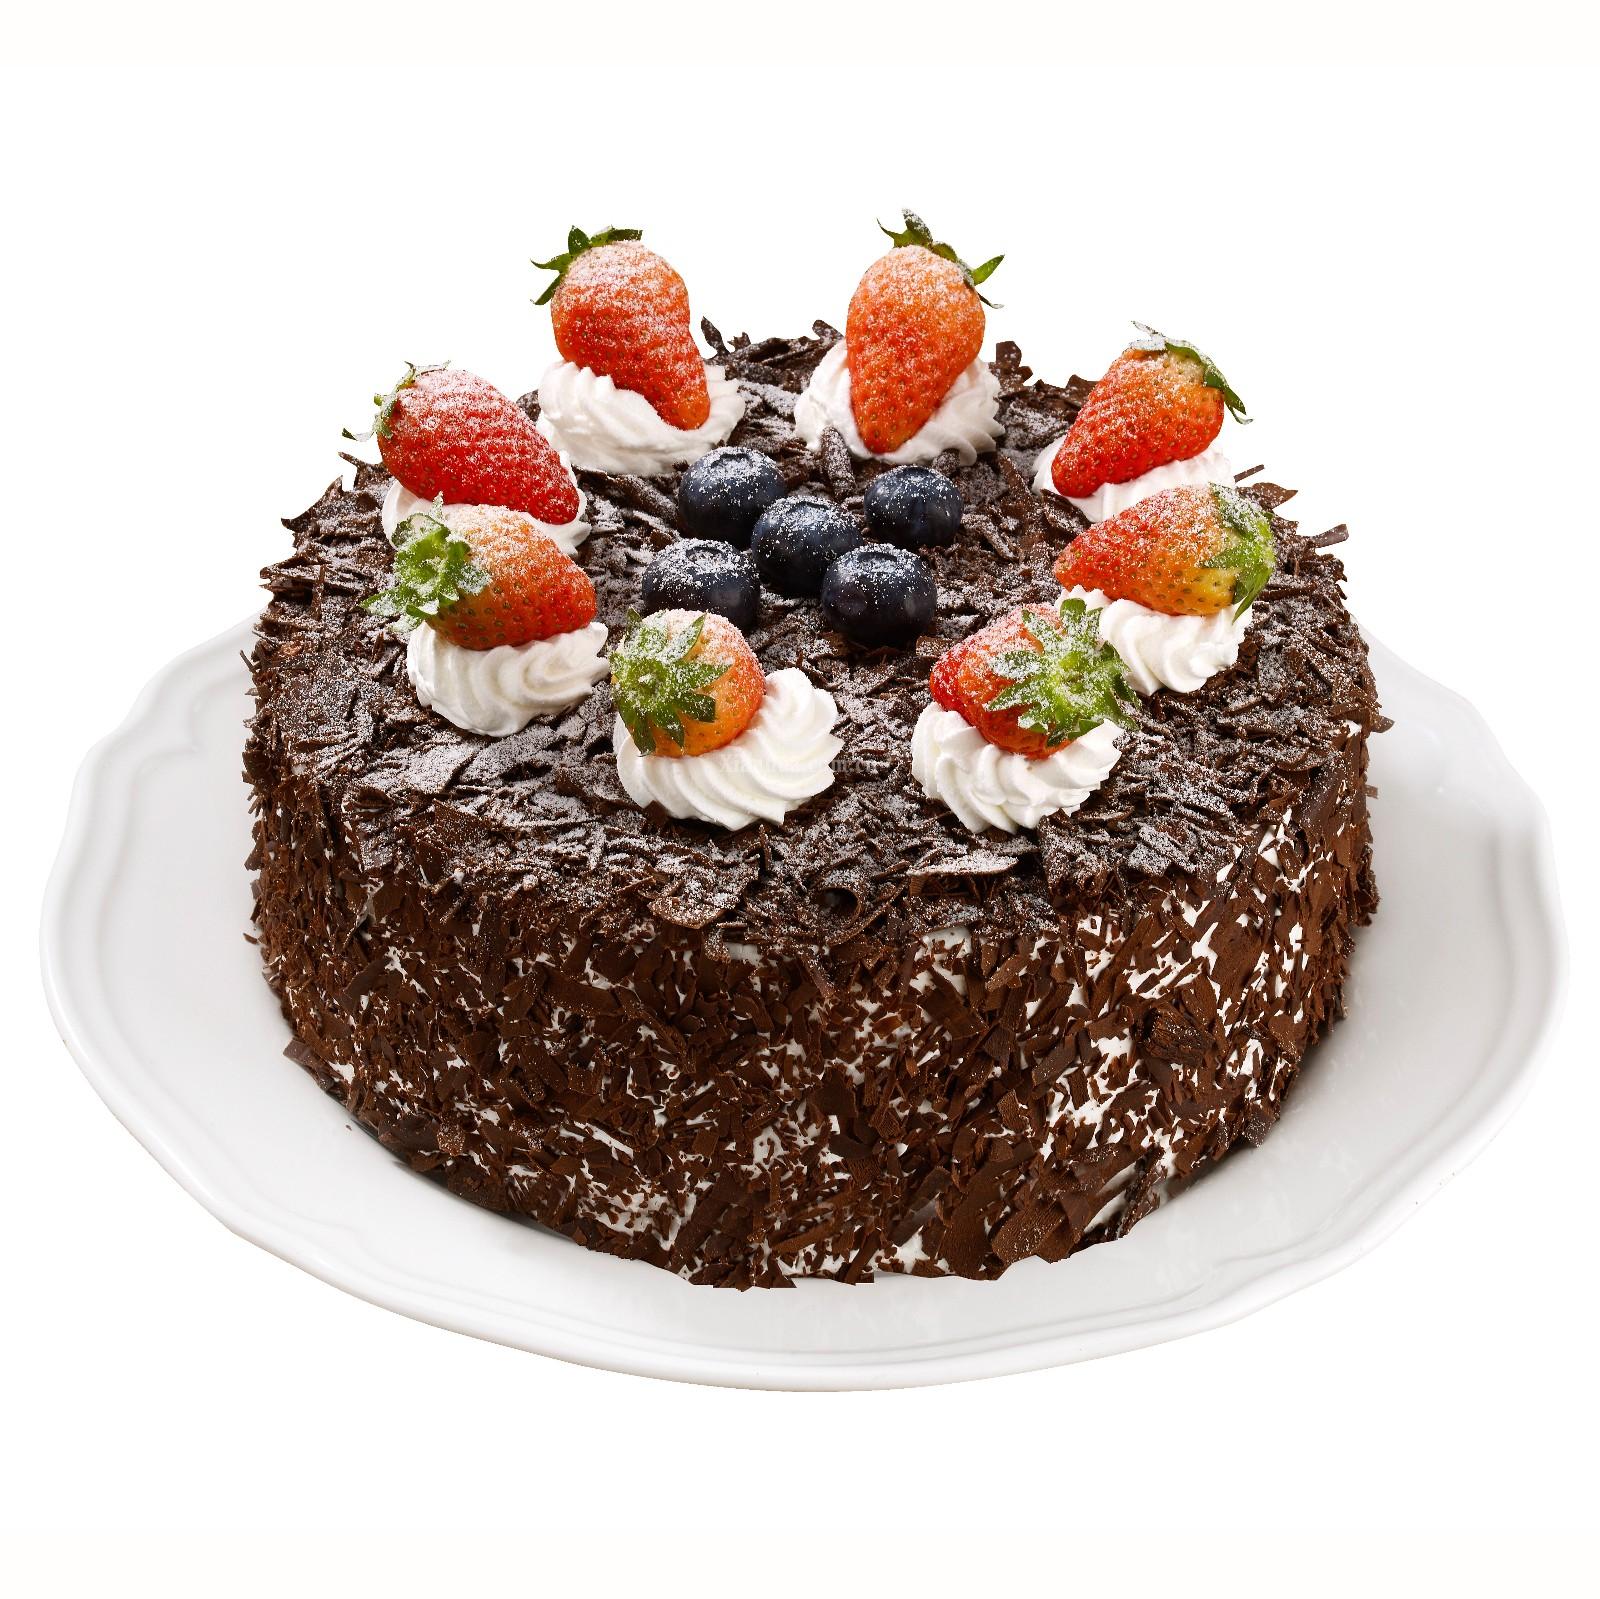 黑森林蛋糕的做法_【图解】黑森林蛋糕怎么做如何做好吃_黑森林蛋糕家常做法大全_Susanyugs_豆果美食